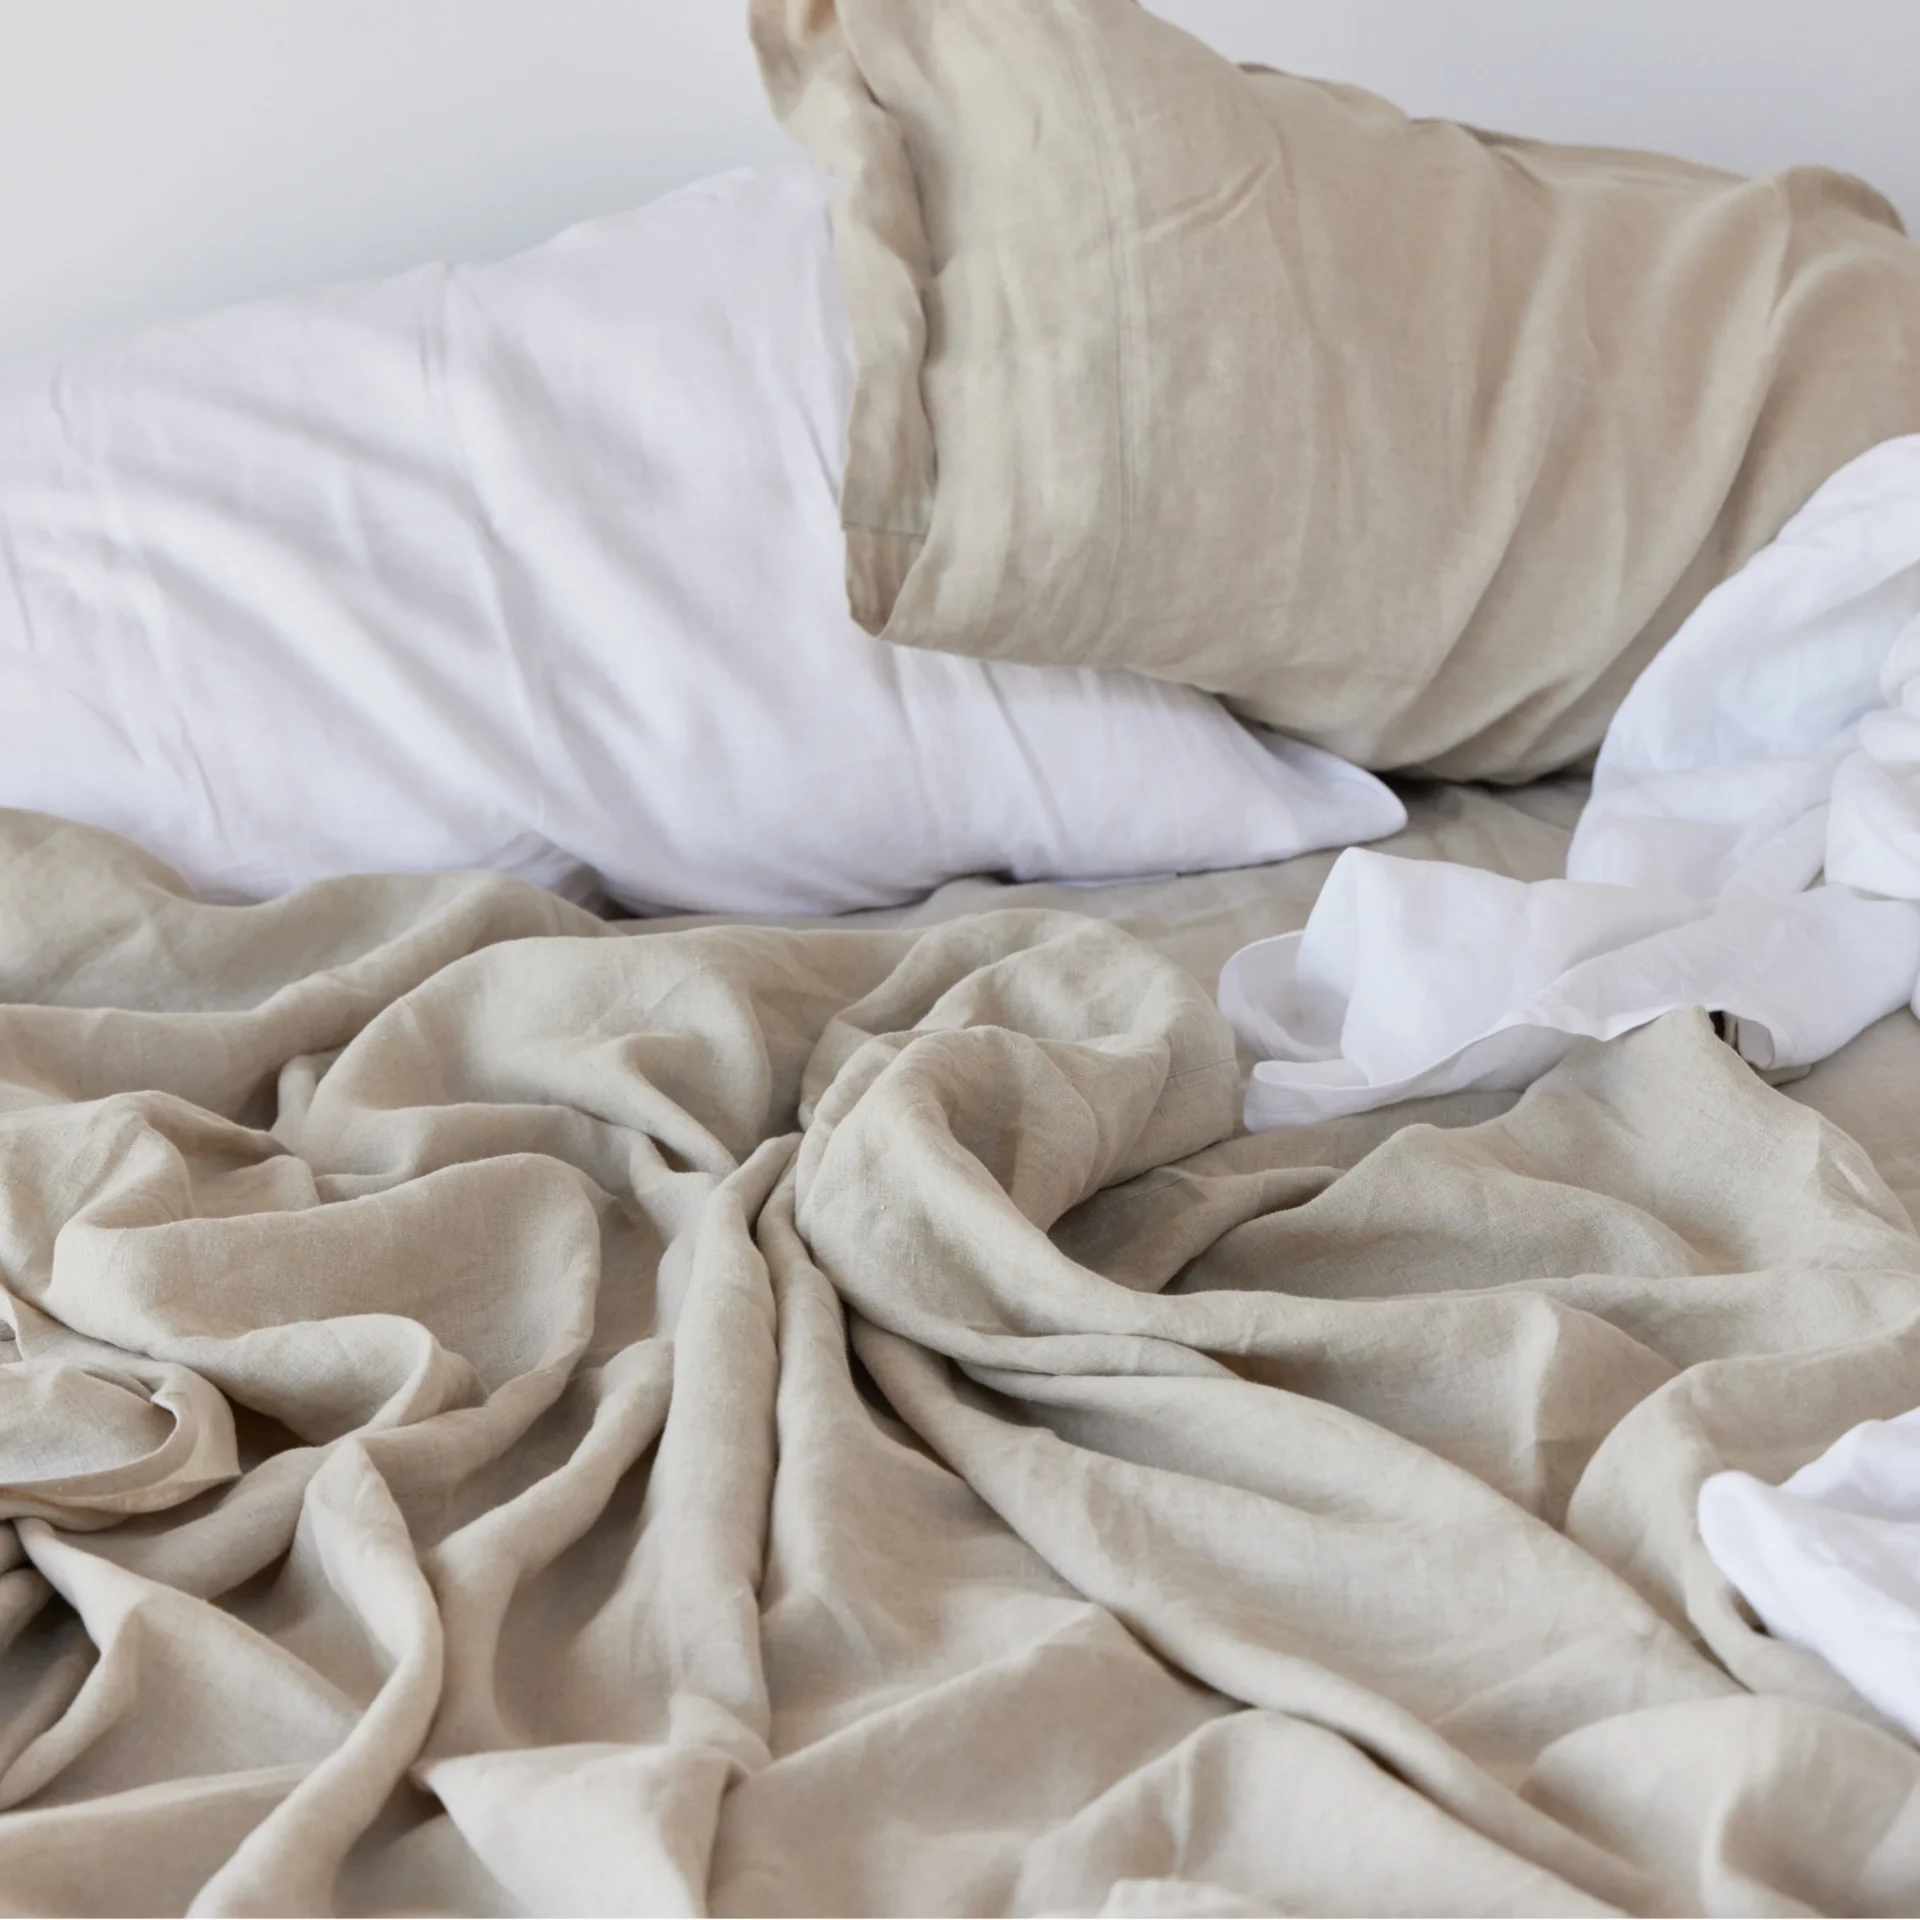 Avocado linen sheets and two pillows covered in Avocado linen pillowcases